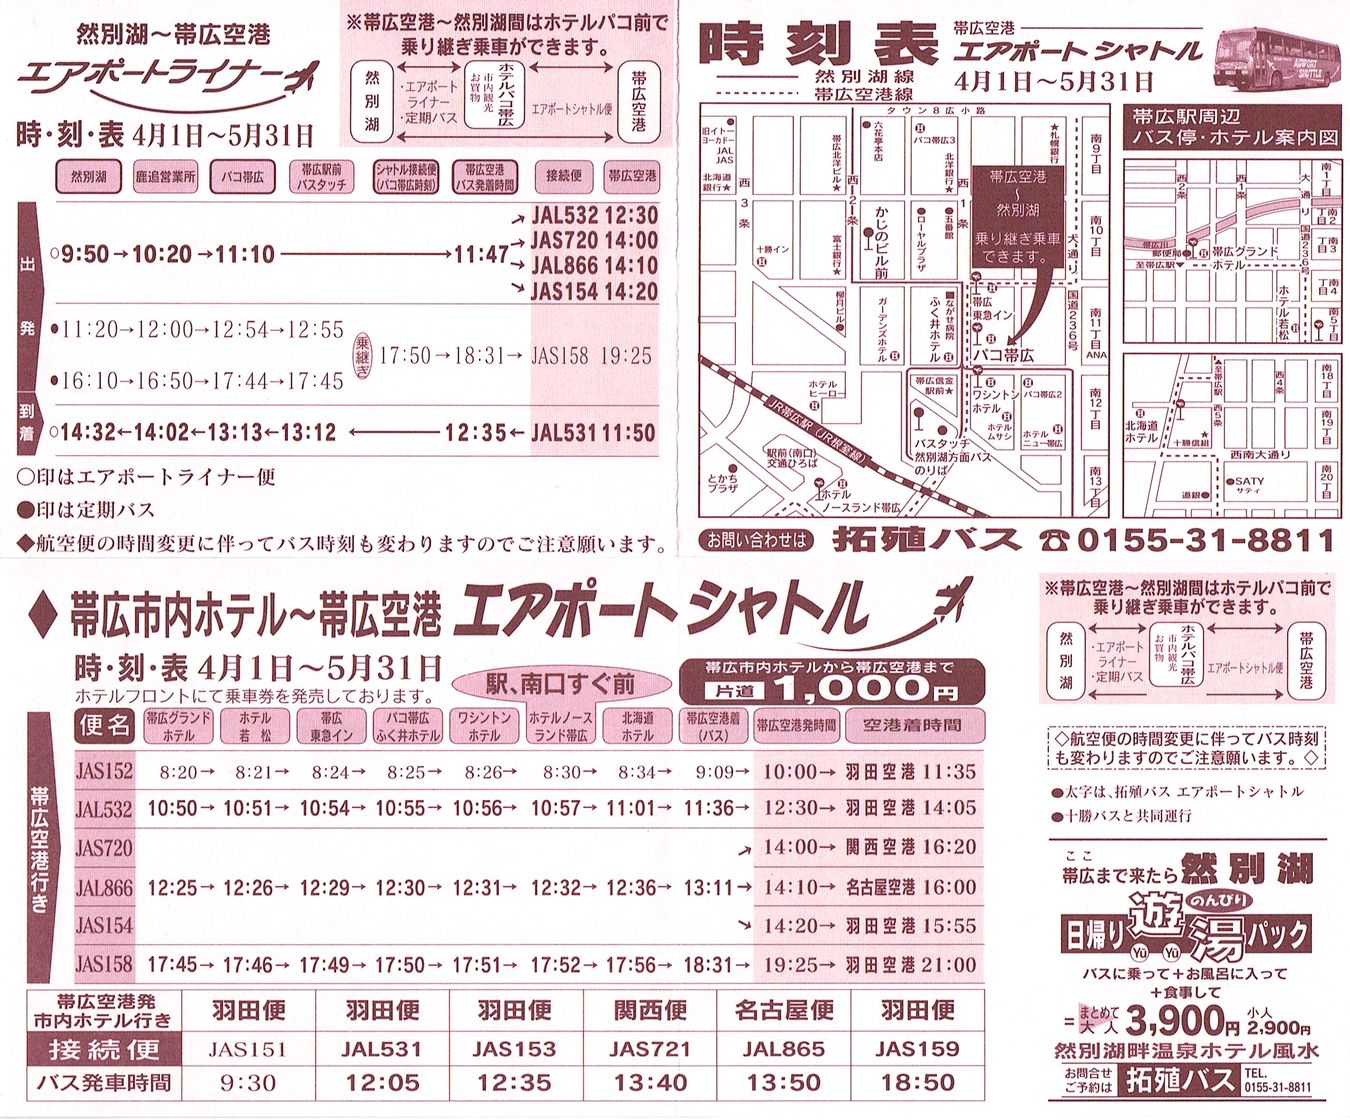 2001-04-01現在_北海道拓殖バス_帯広空港連絡バス時刻表